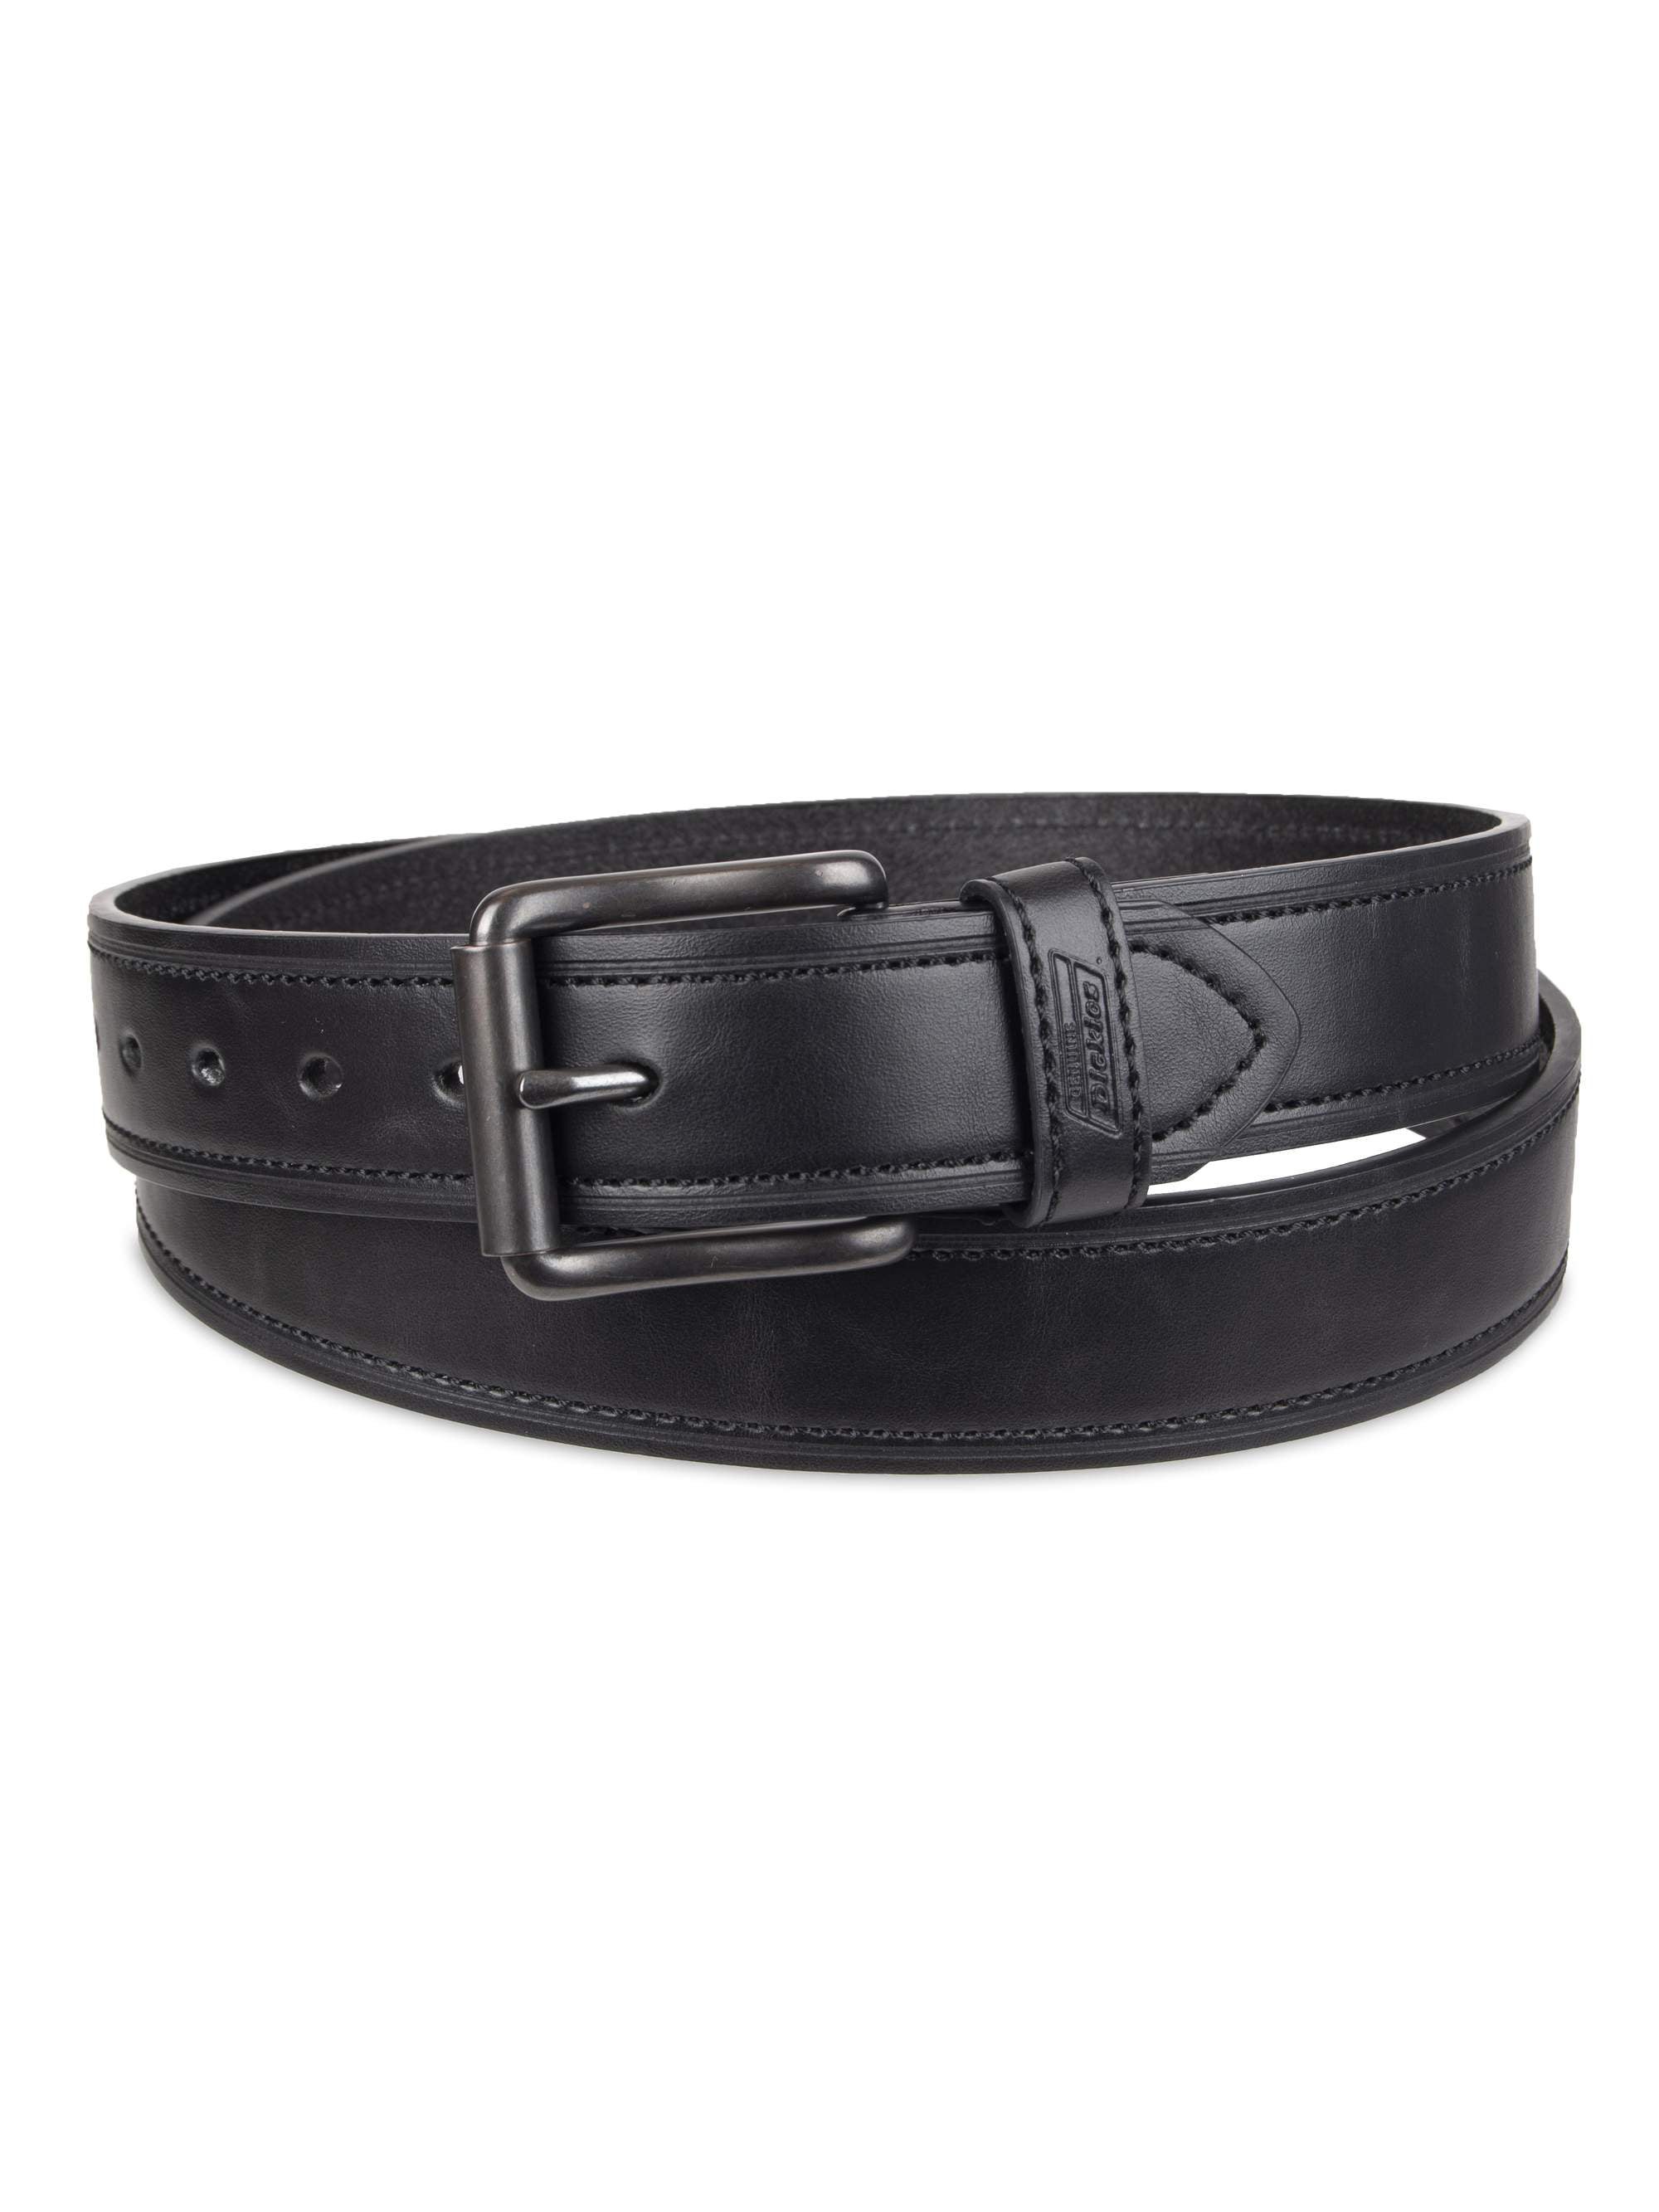 Genuine Dickies - Genuine Dickies Leather Work Belt - Walmart.com